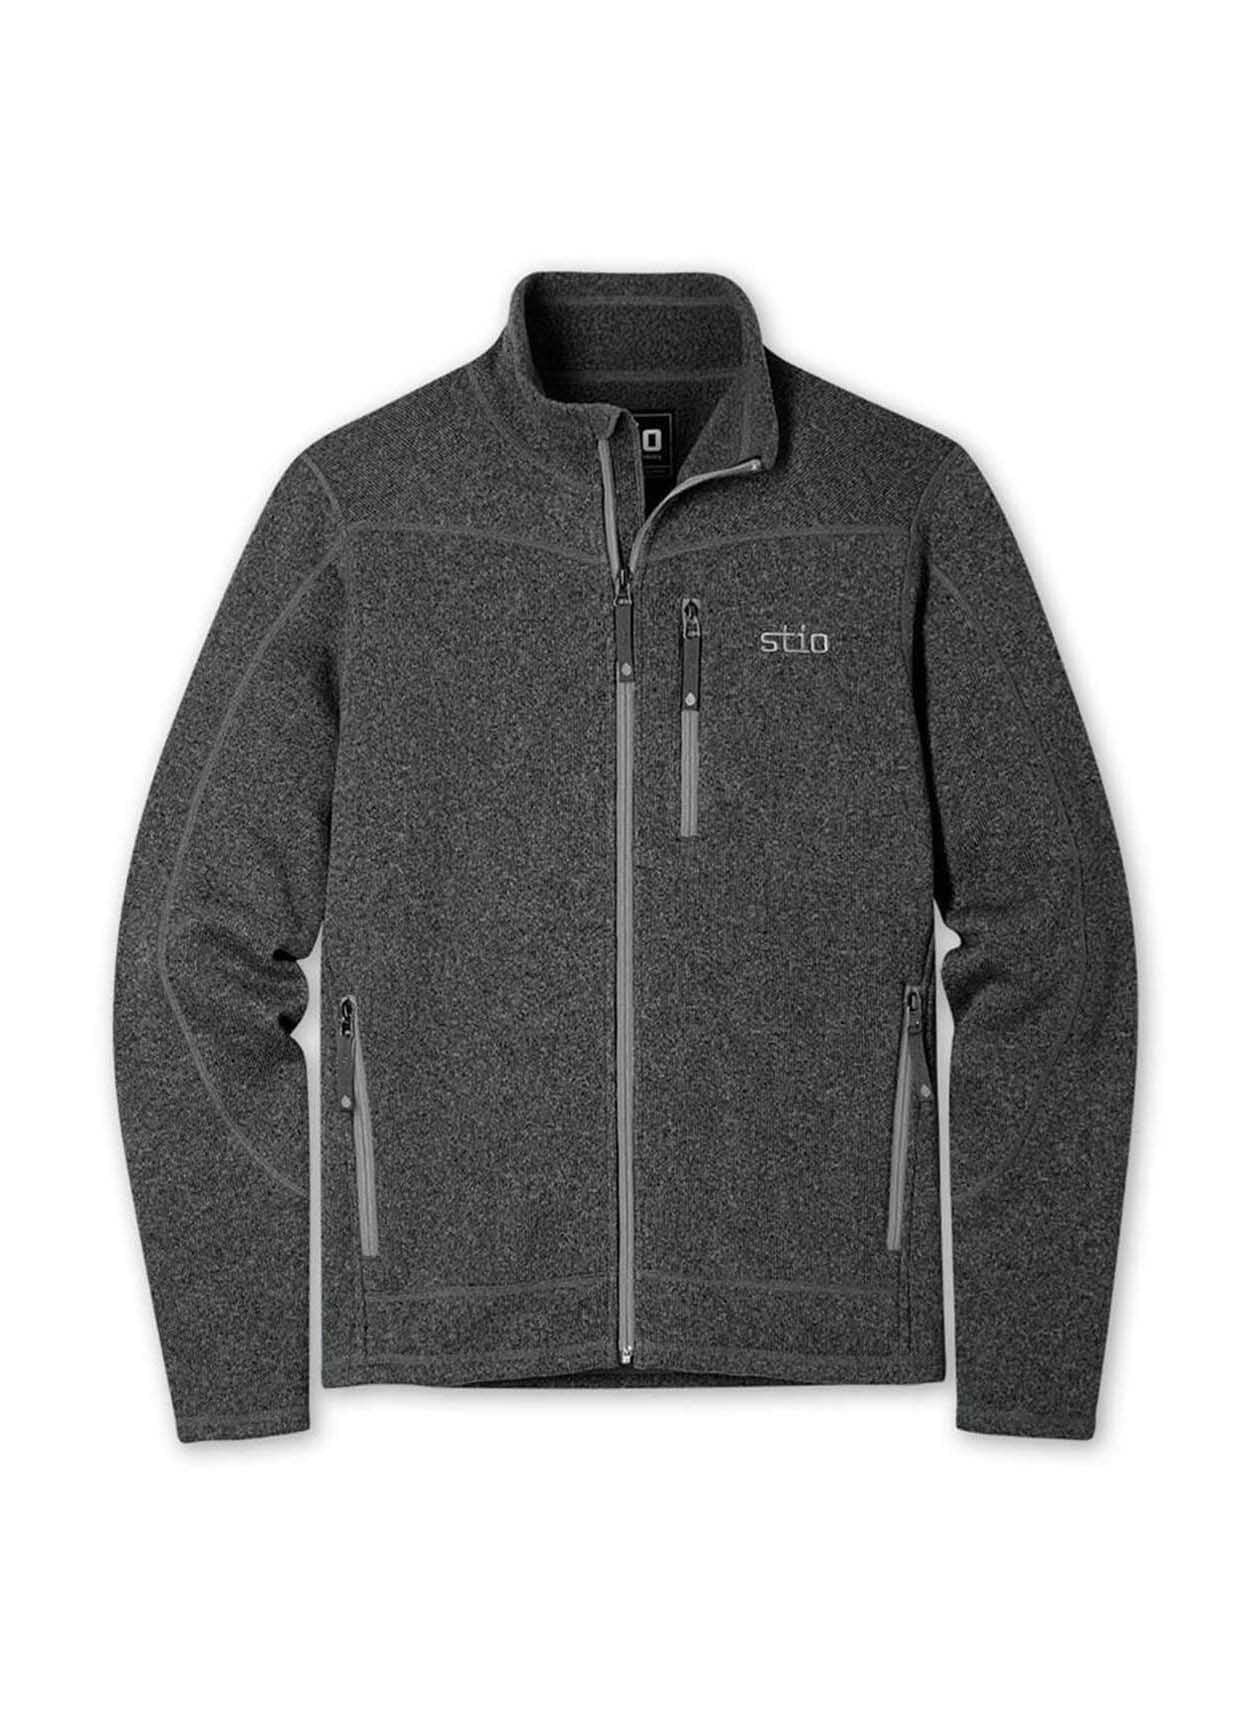 STIO Men's Wilcox Sweater Fleece Jacket